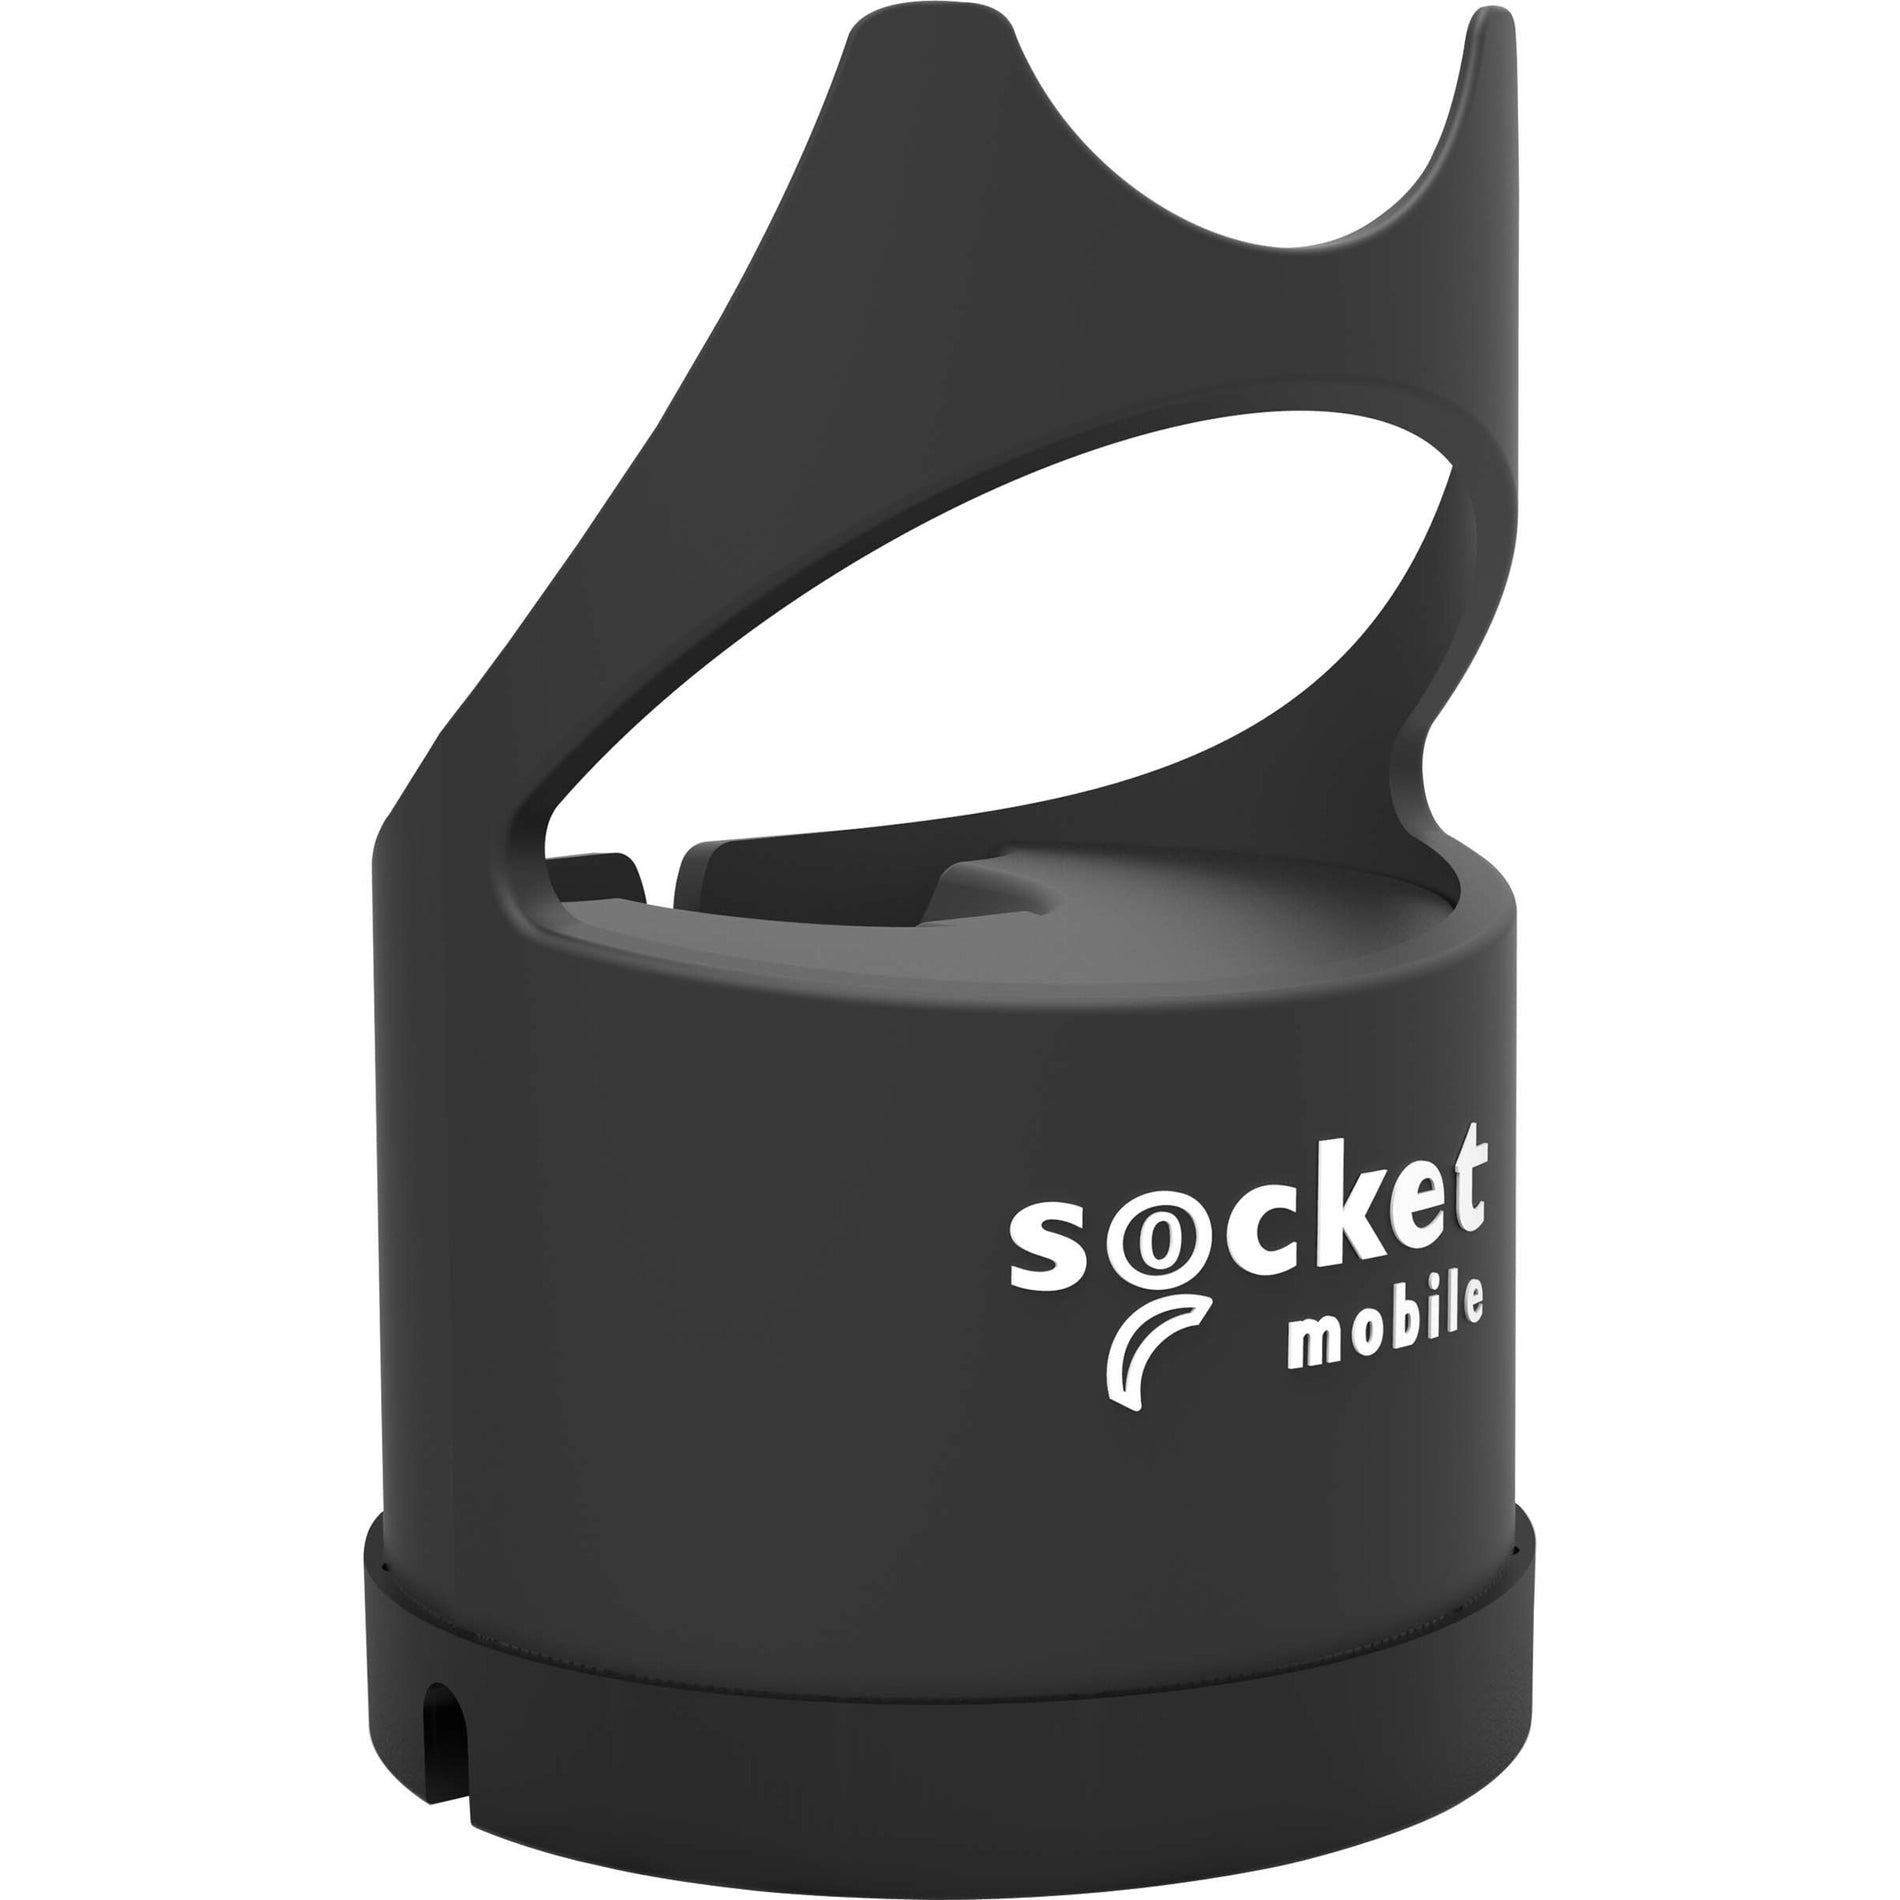 Socket Mobile CX3811-2571 SocketScan S740 Universal Barcode Scanner, Black & Black Dock - Wireless 2D & 1D Imager, Handheld, 19.50" Scanning Distance